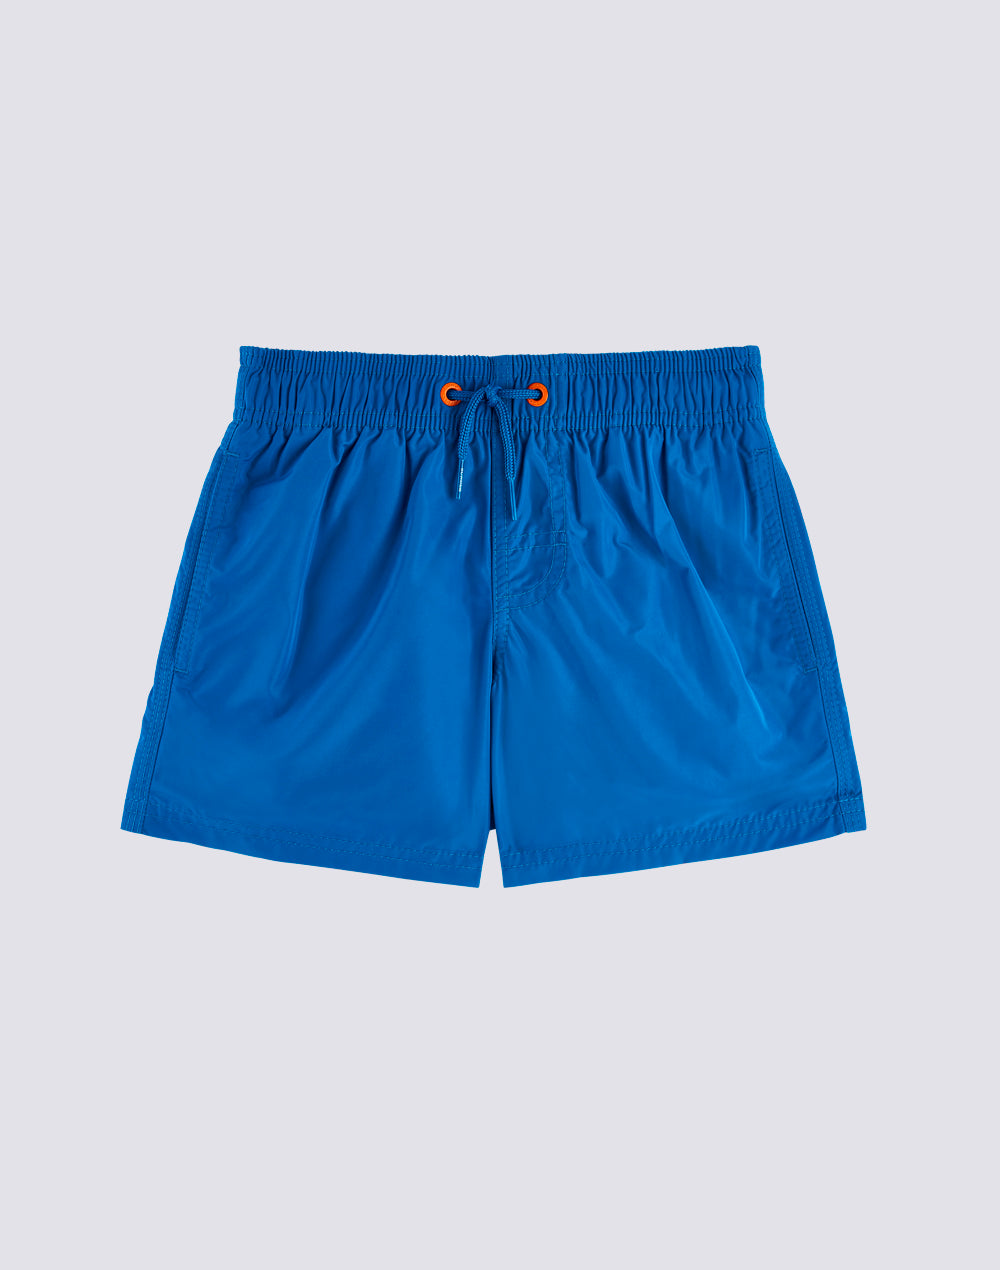 Bonton zipped swim shorts - Blue